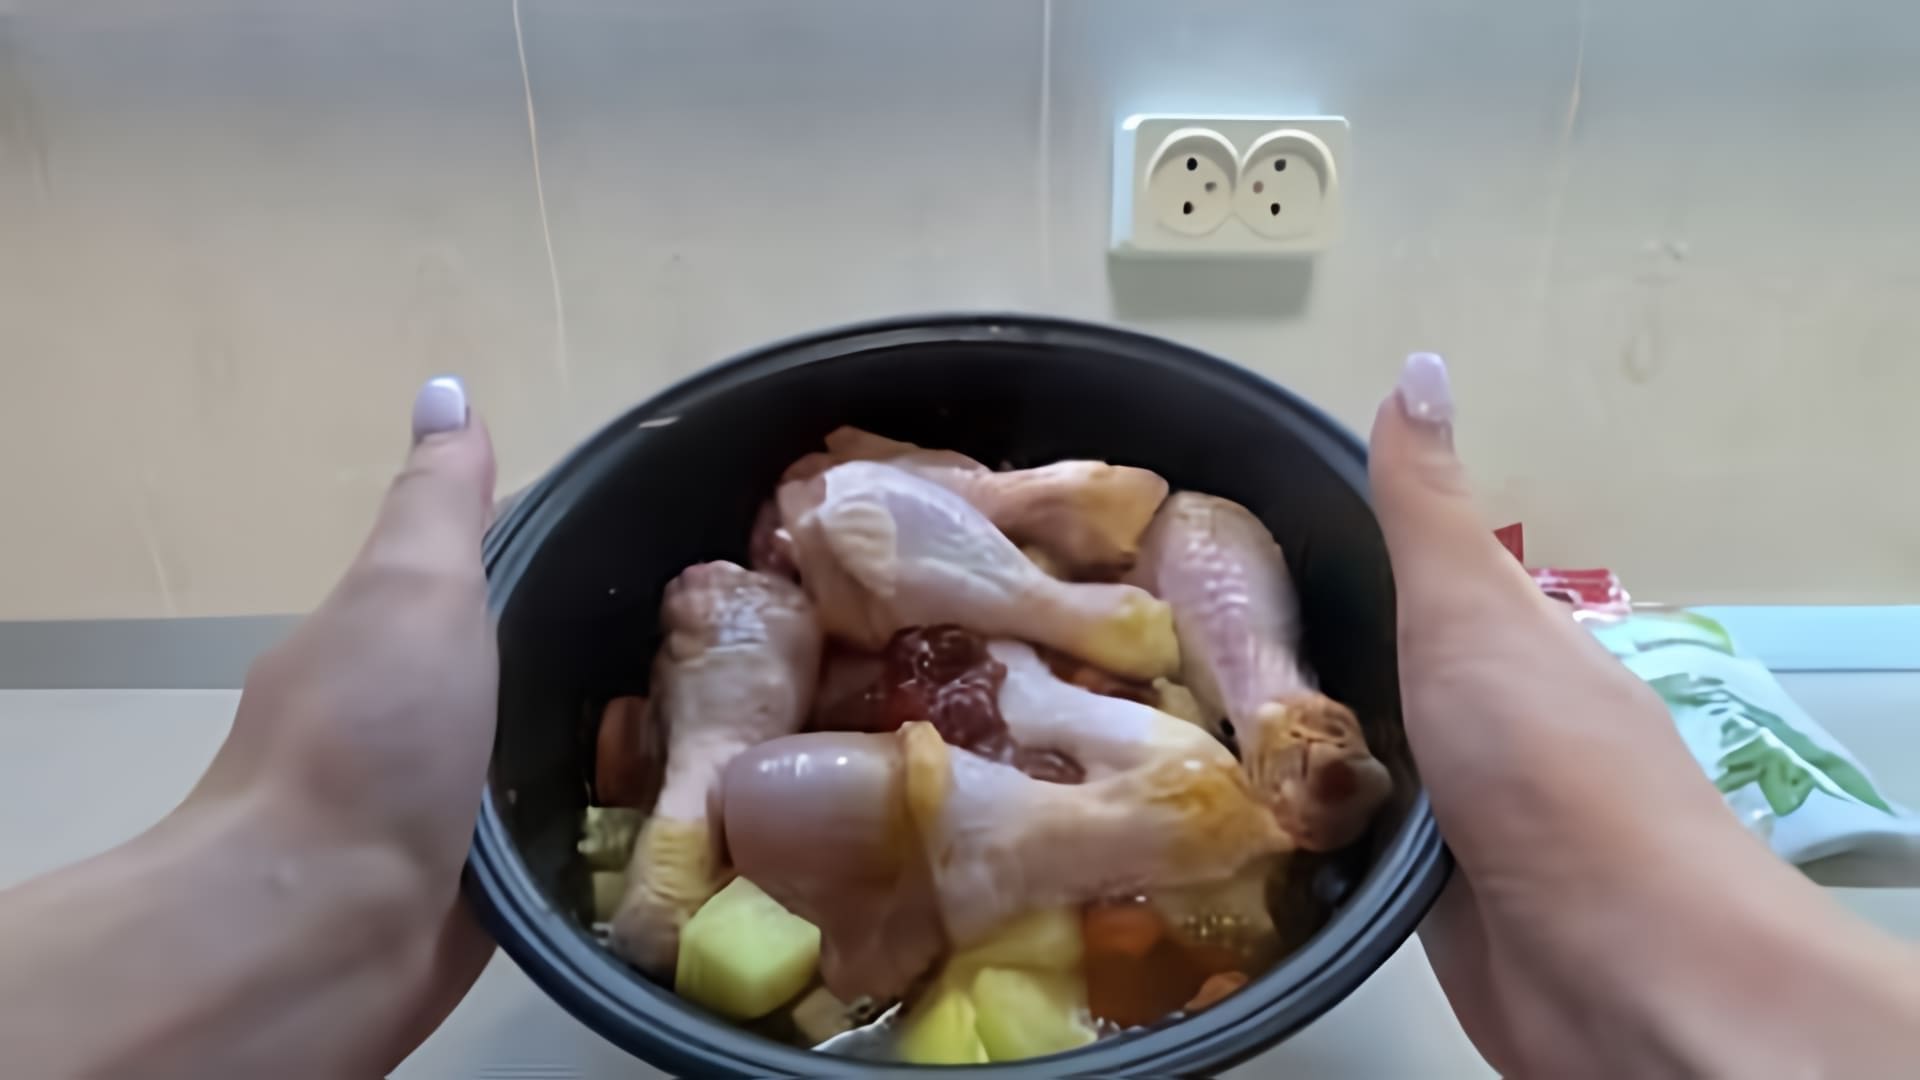 В этом видео демонстрируется процесс приготовления тушеной картошки с куриными ножками в мультиварке